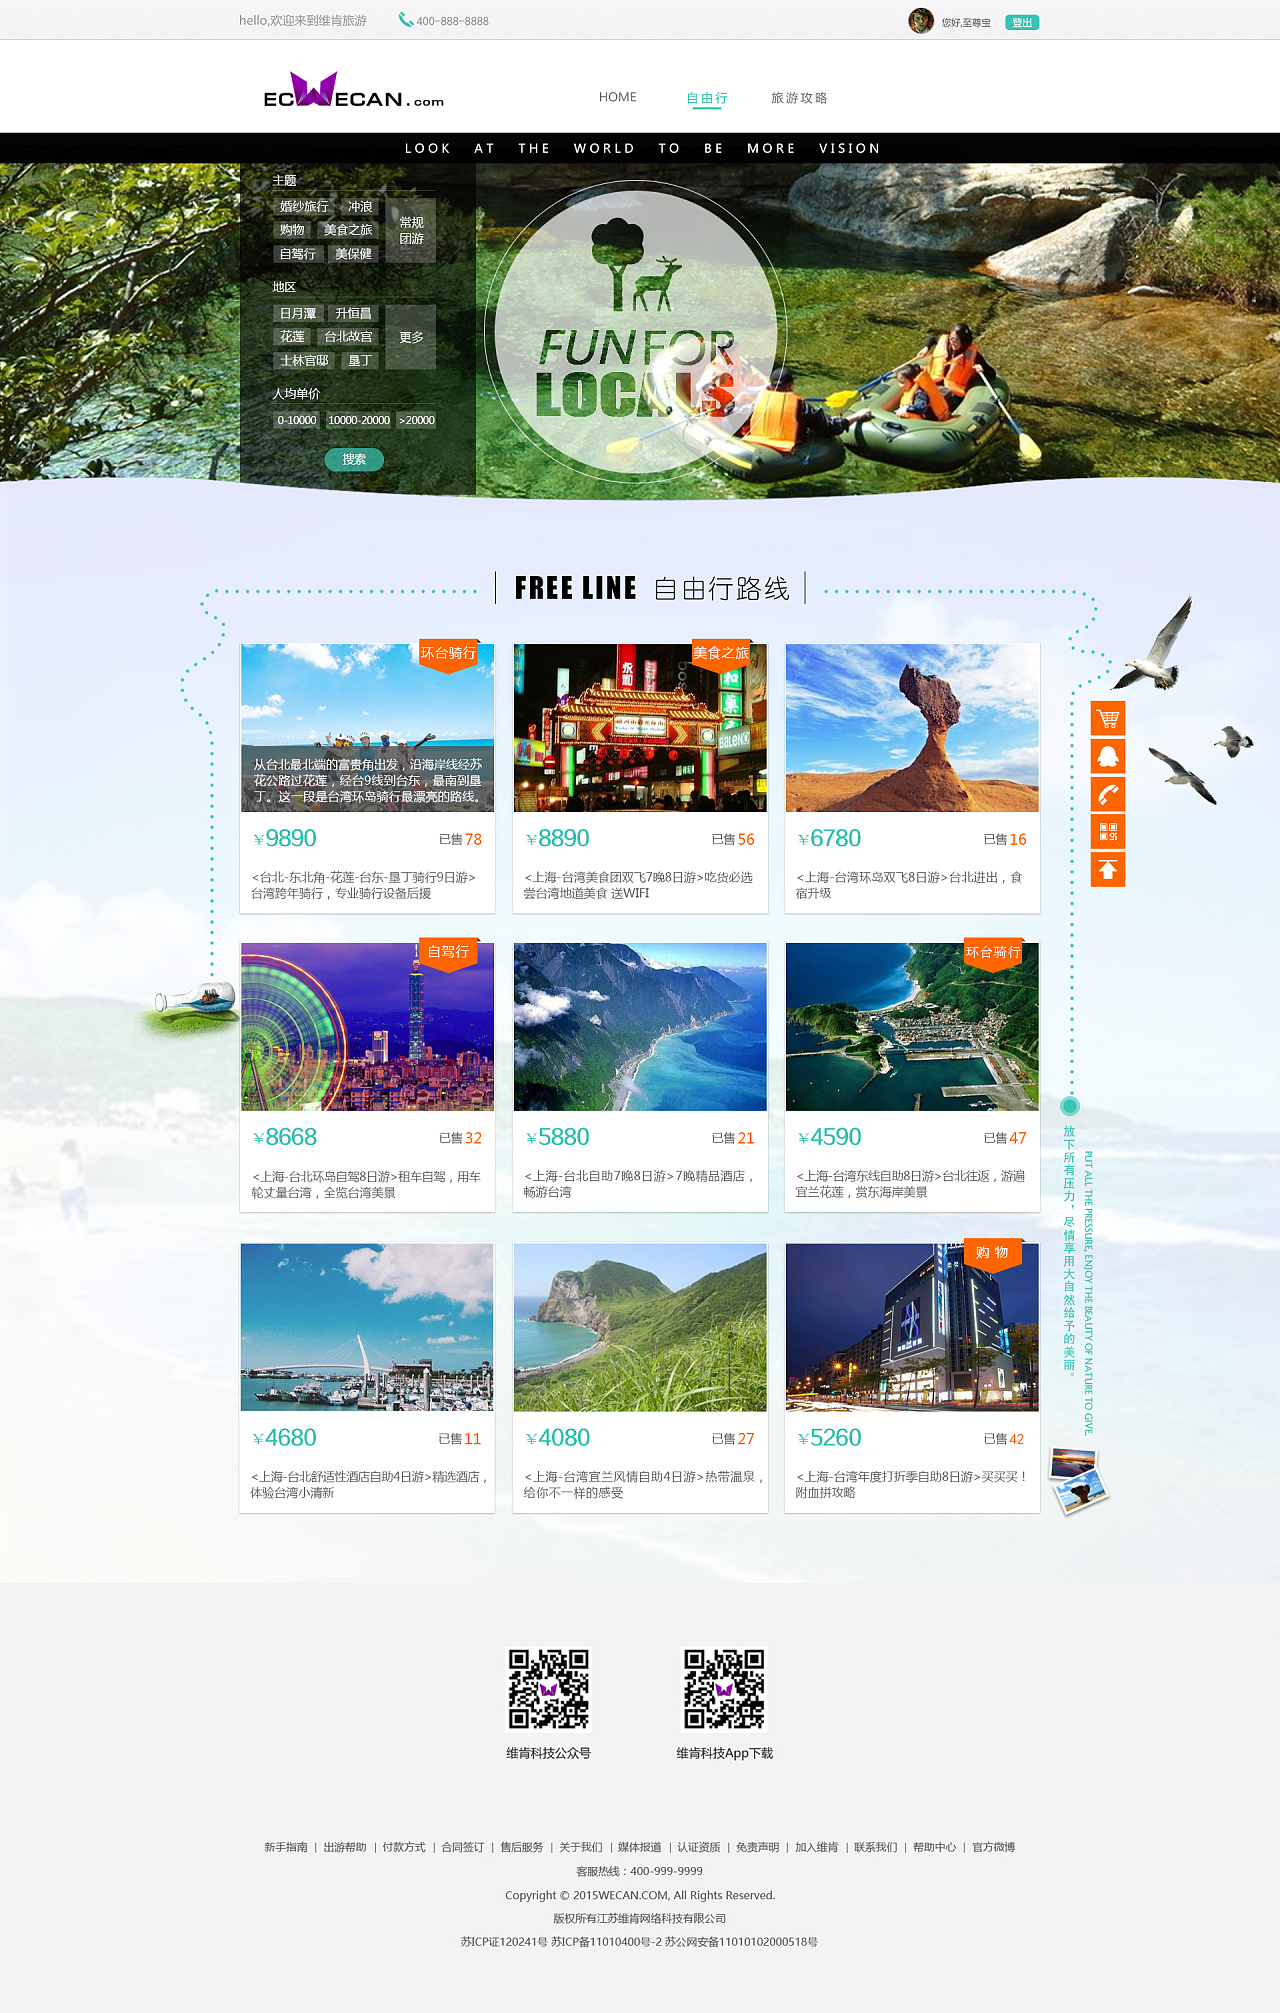 旅游类网站制作,攻略及自由行和会员中心页面设计